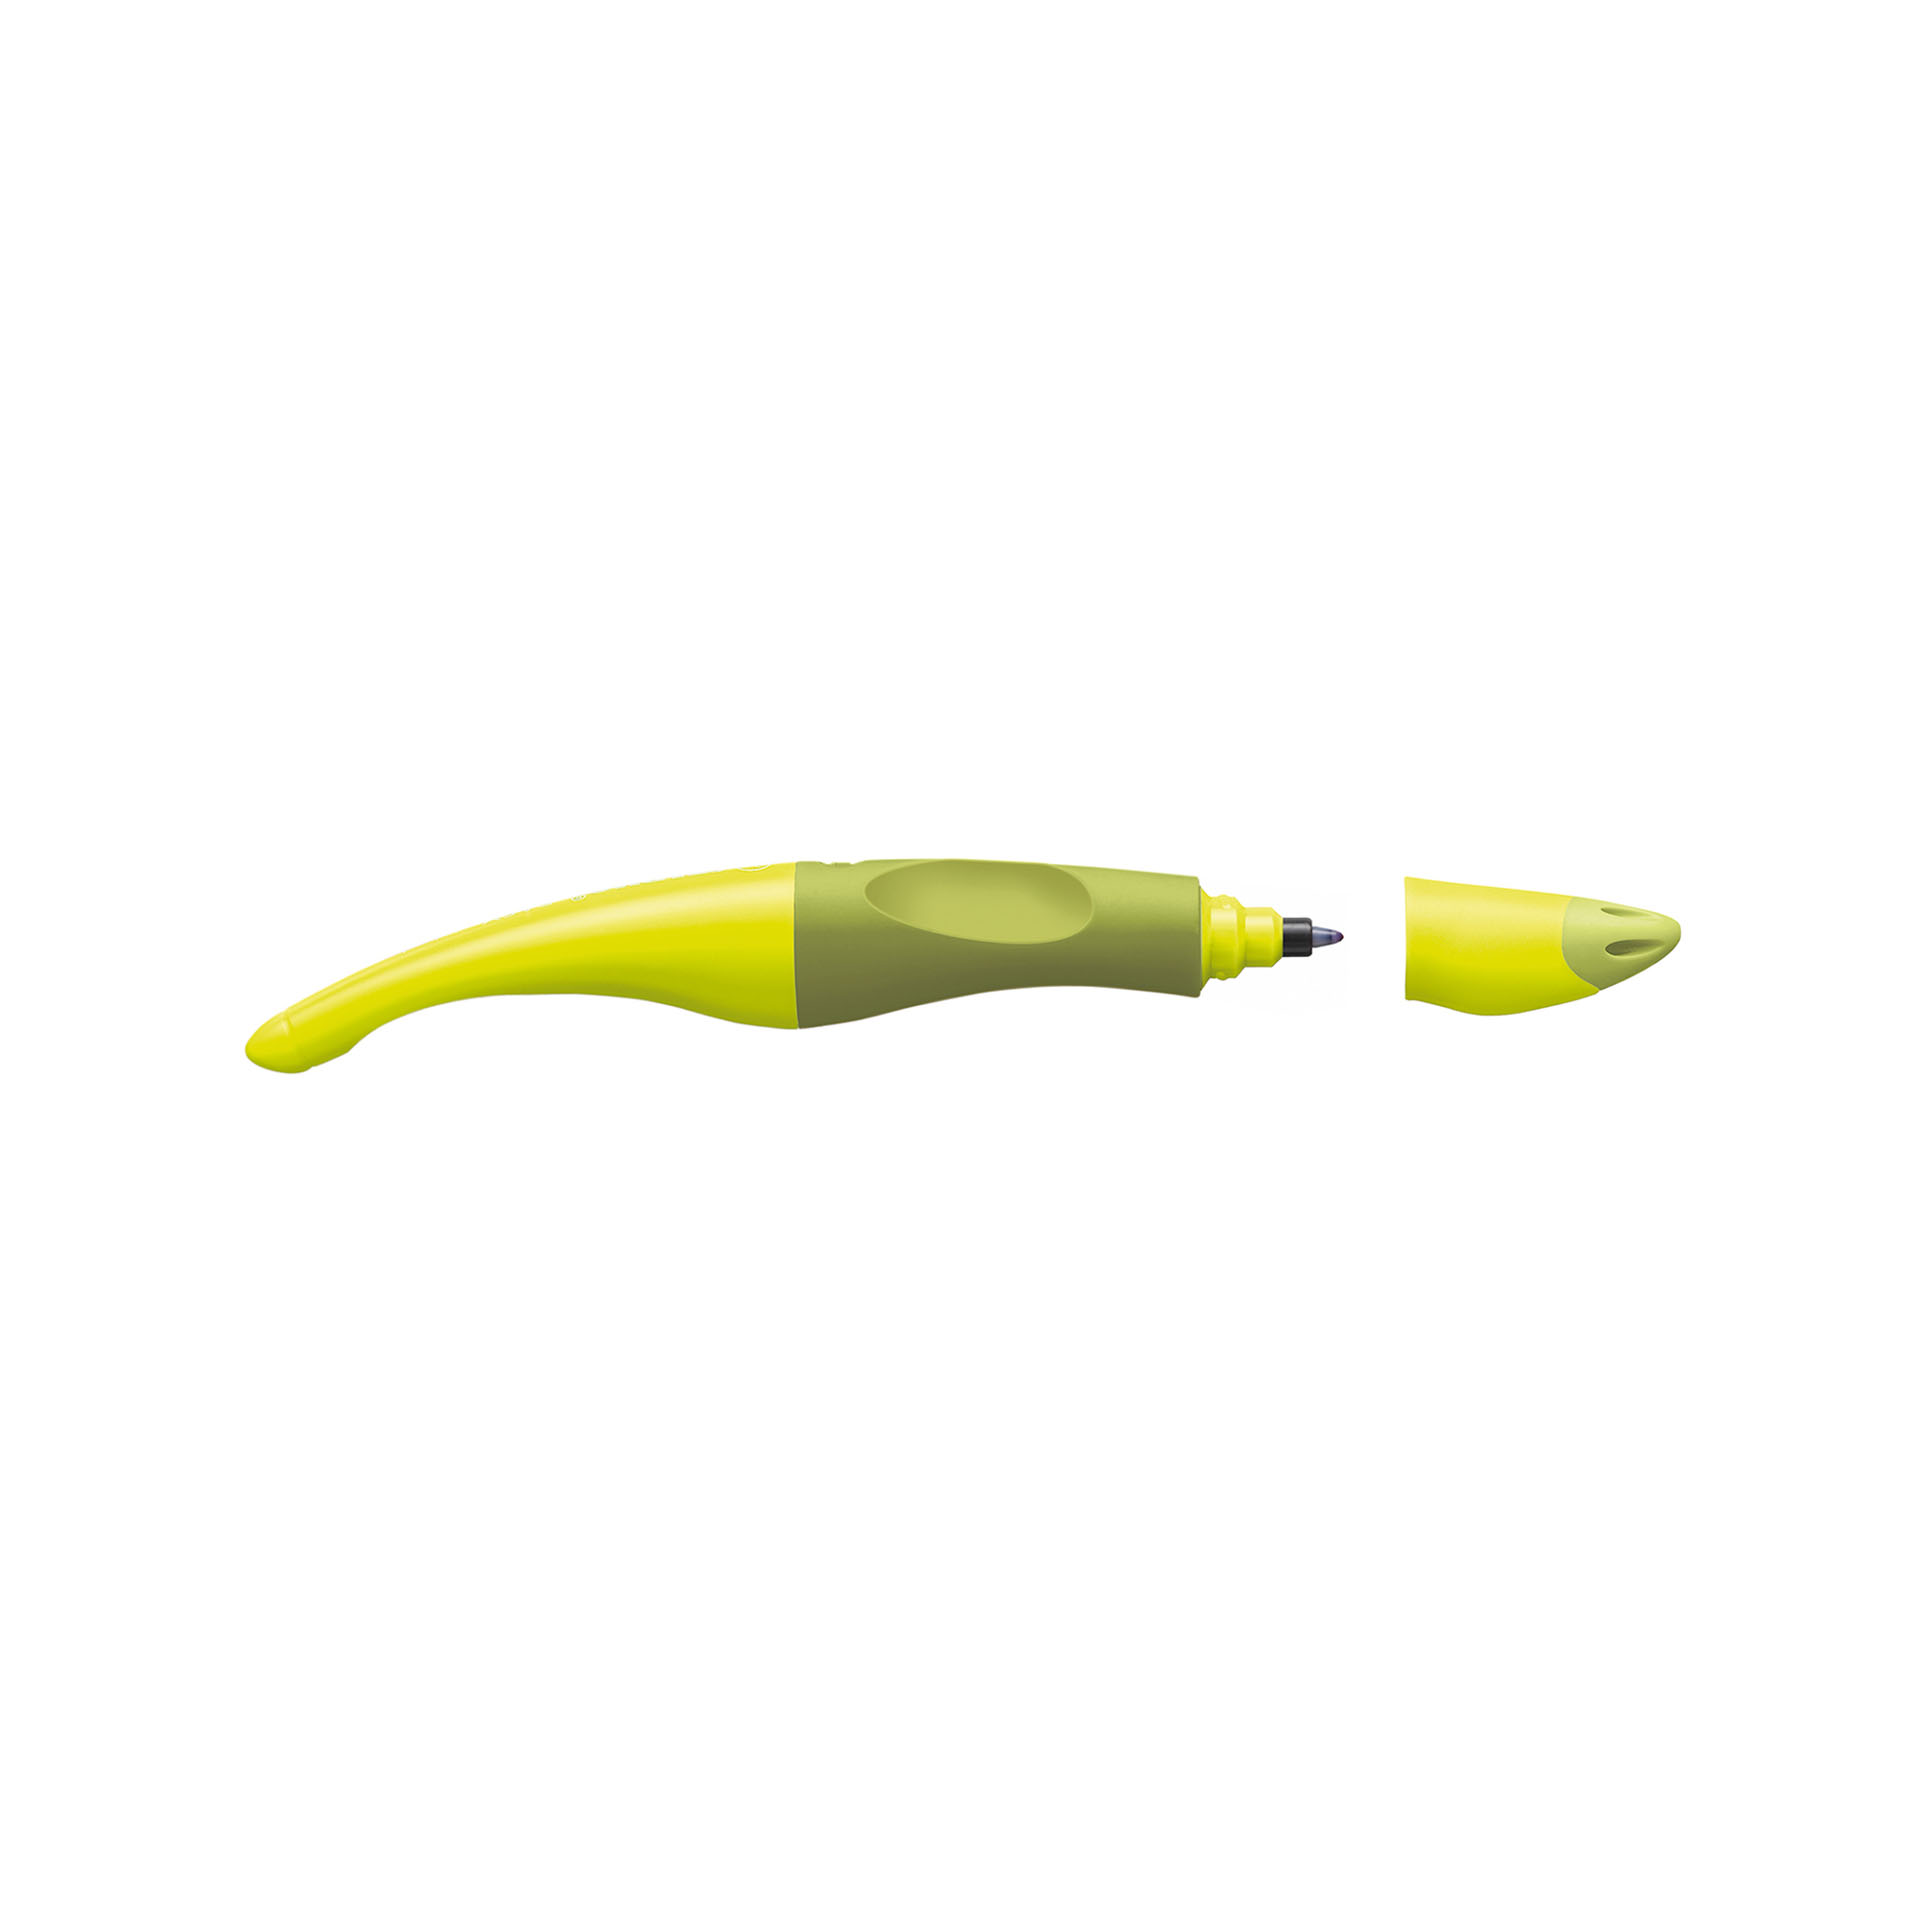 Penna Roller Ergonomica - Stabilo Easyoriginal Per Destrimani In Verde/lime - Cartuccia Blu Inclusa, , large